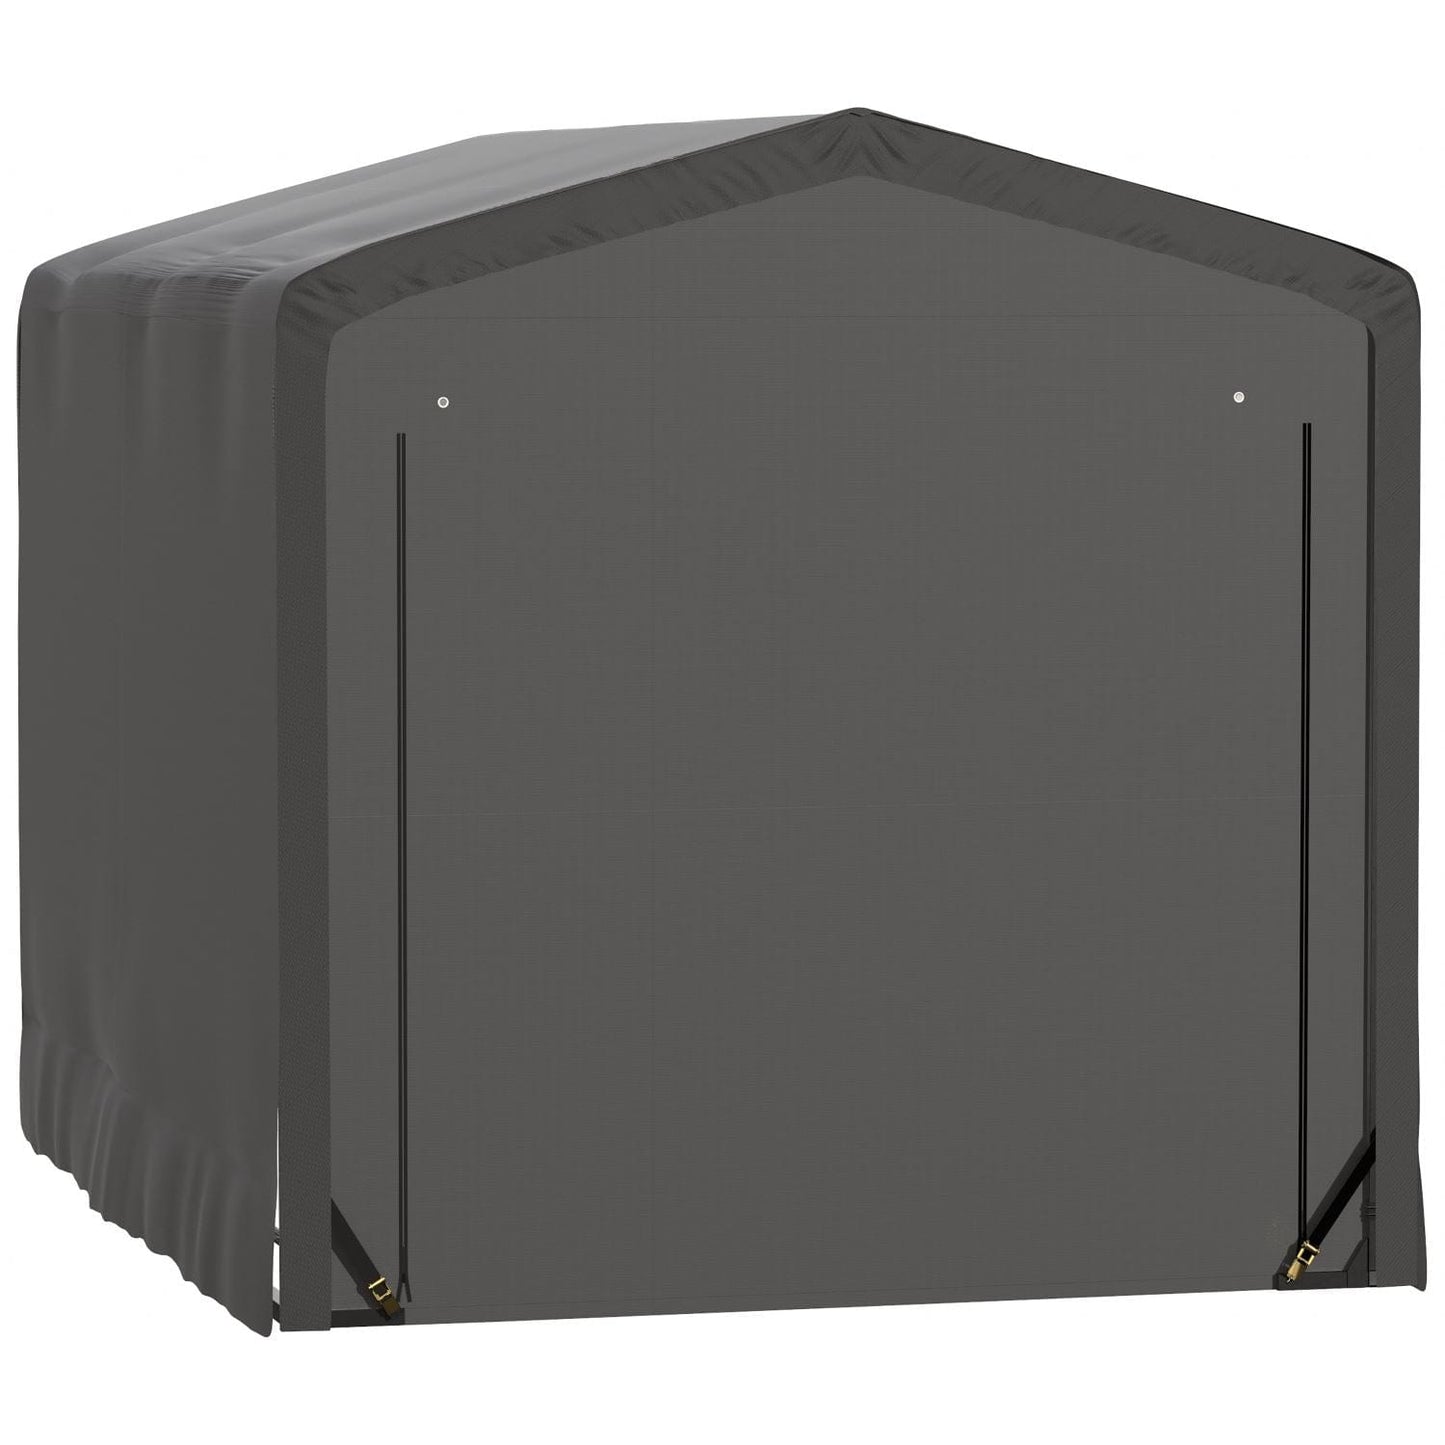 ShelterLogic Portable Garage ShelterLogic | ShelterTube Wind and Snow-Load Rated Garage 10x14x10 Gray SQAACC0103C01001410